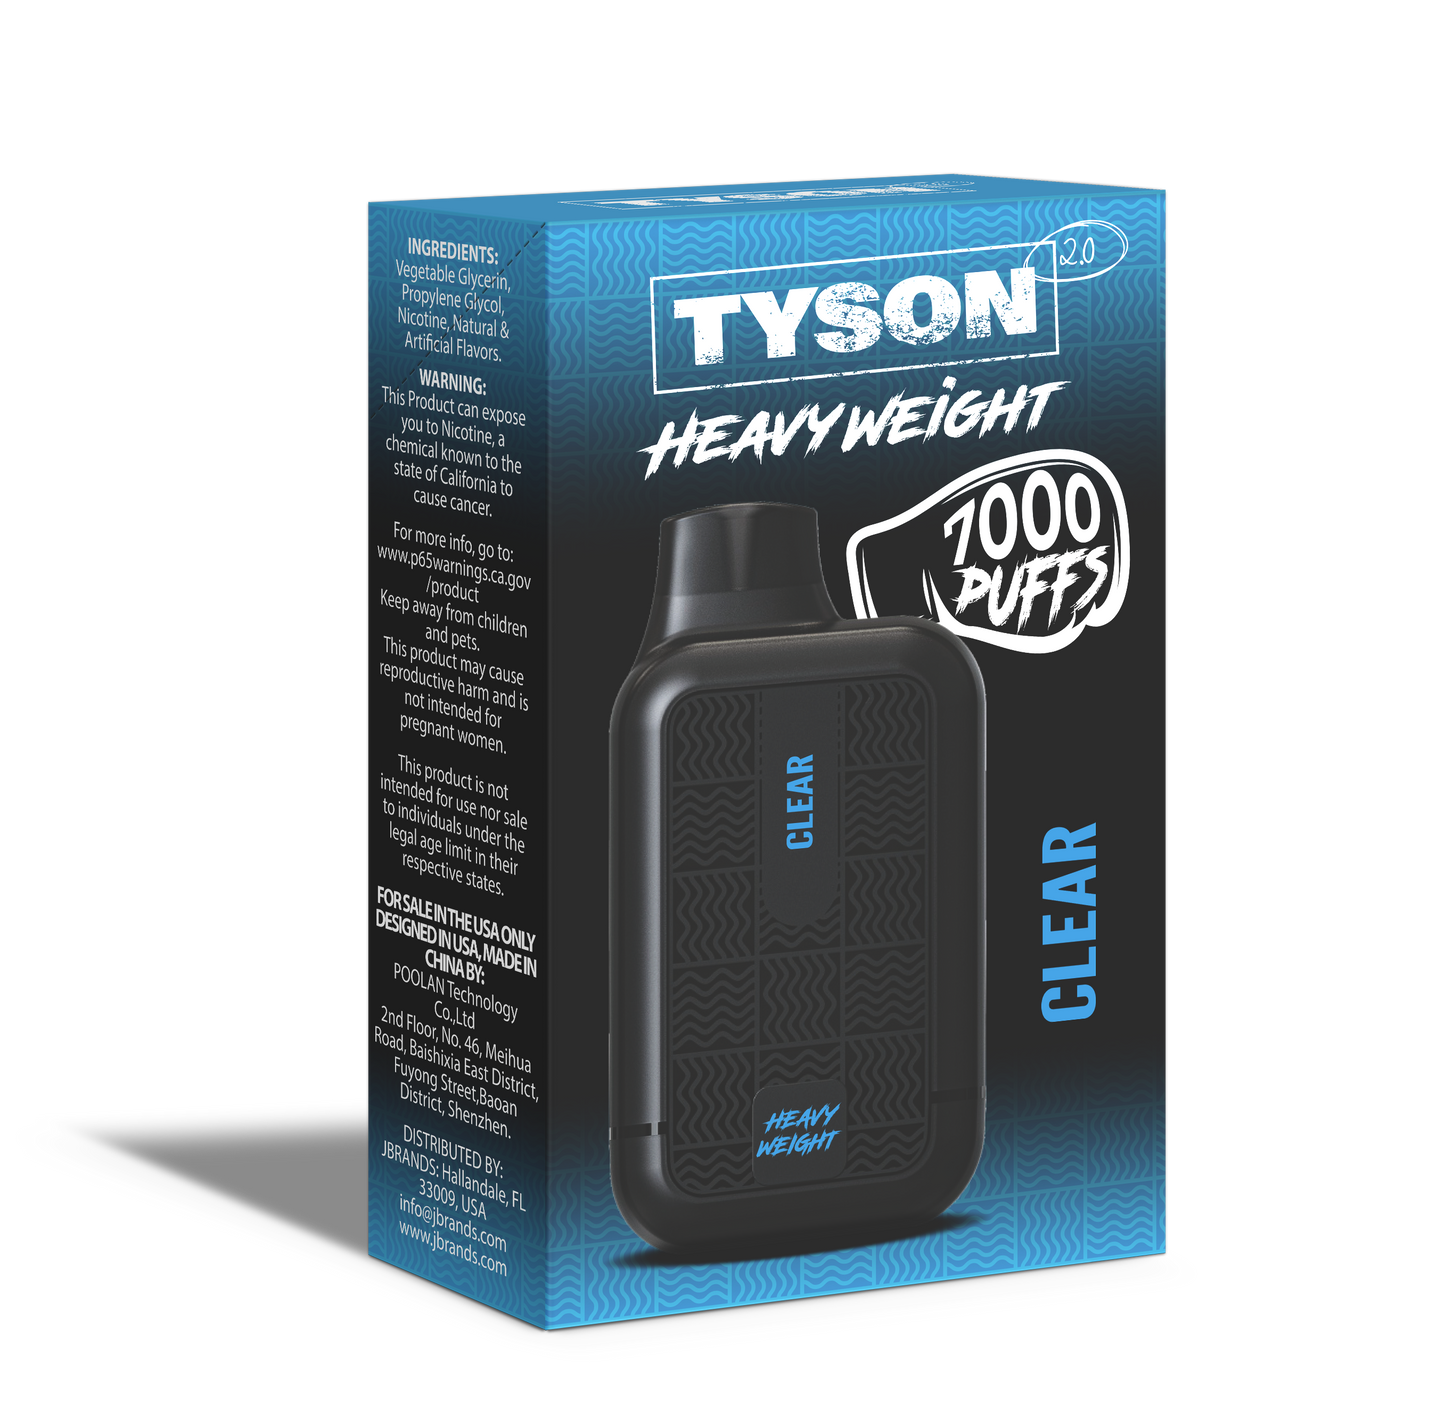 Tyson 2.0 Heavyweight 7000 Puffs Disposable Vape - Clear